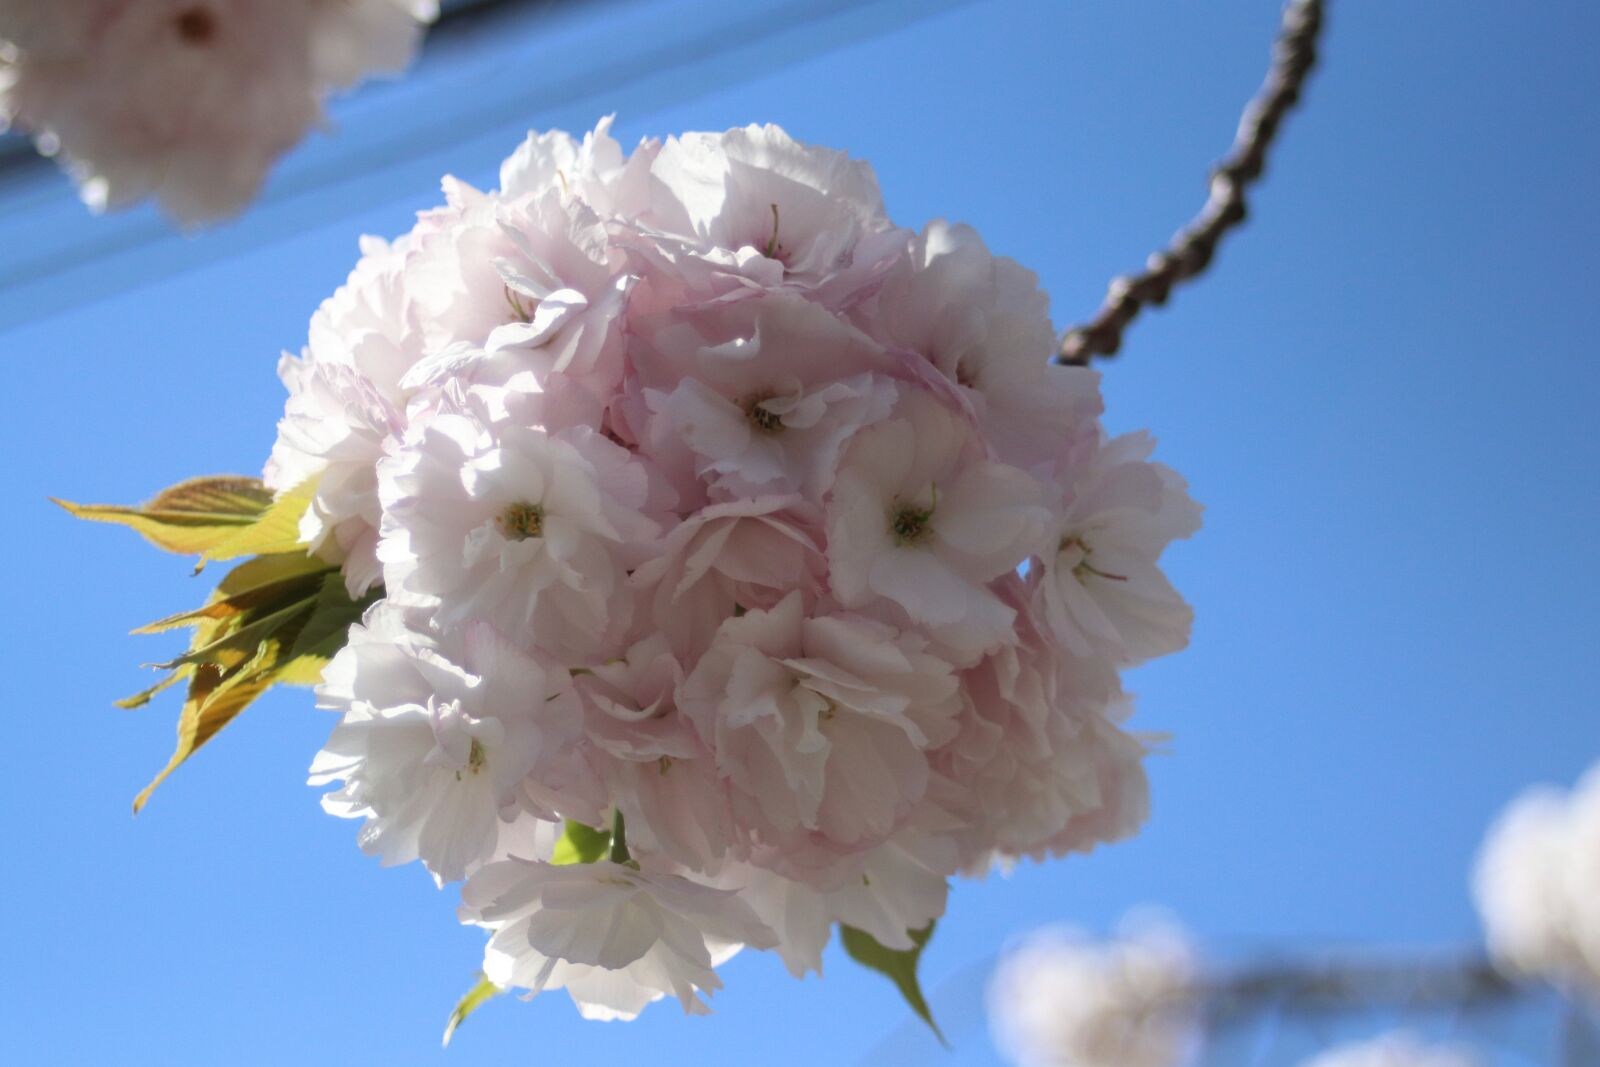 Canon EOS 80D + Canon EF 28-80mm f/3.5-5.6 sample photo. Sakura, spring, bloom photography